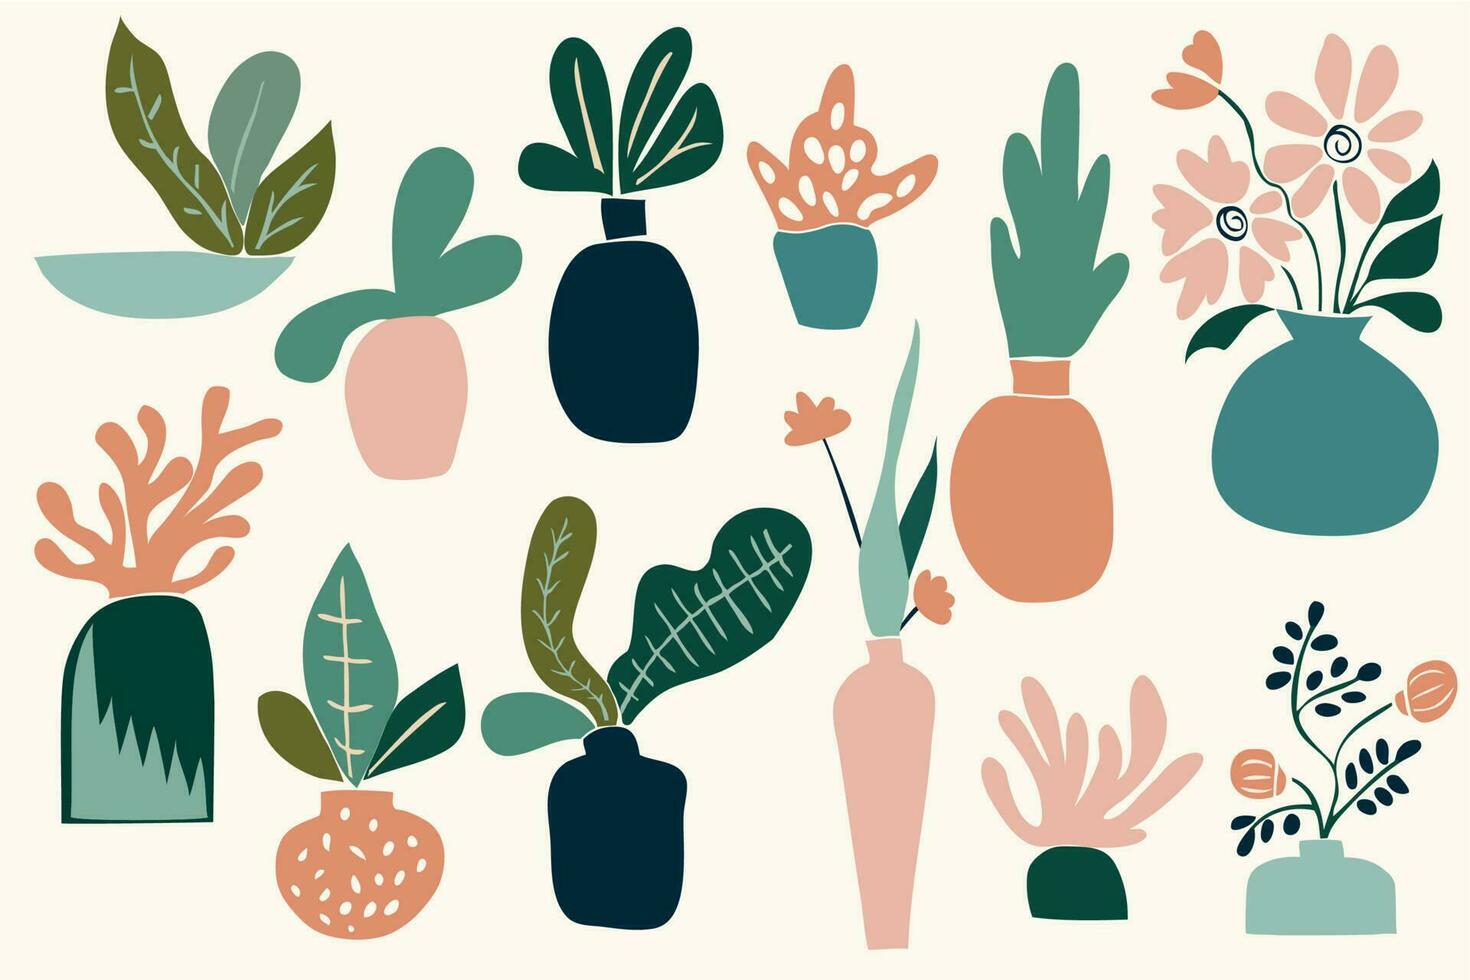 inhabituel les plantes dans des pots dans moderniste style. ensemble de abstrait cactus et feuilles inspiré par impressionnisme vecteur